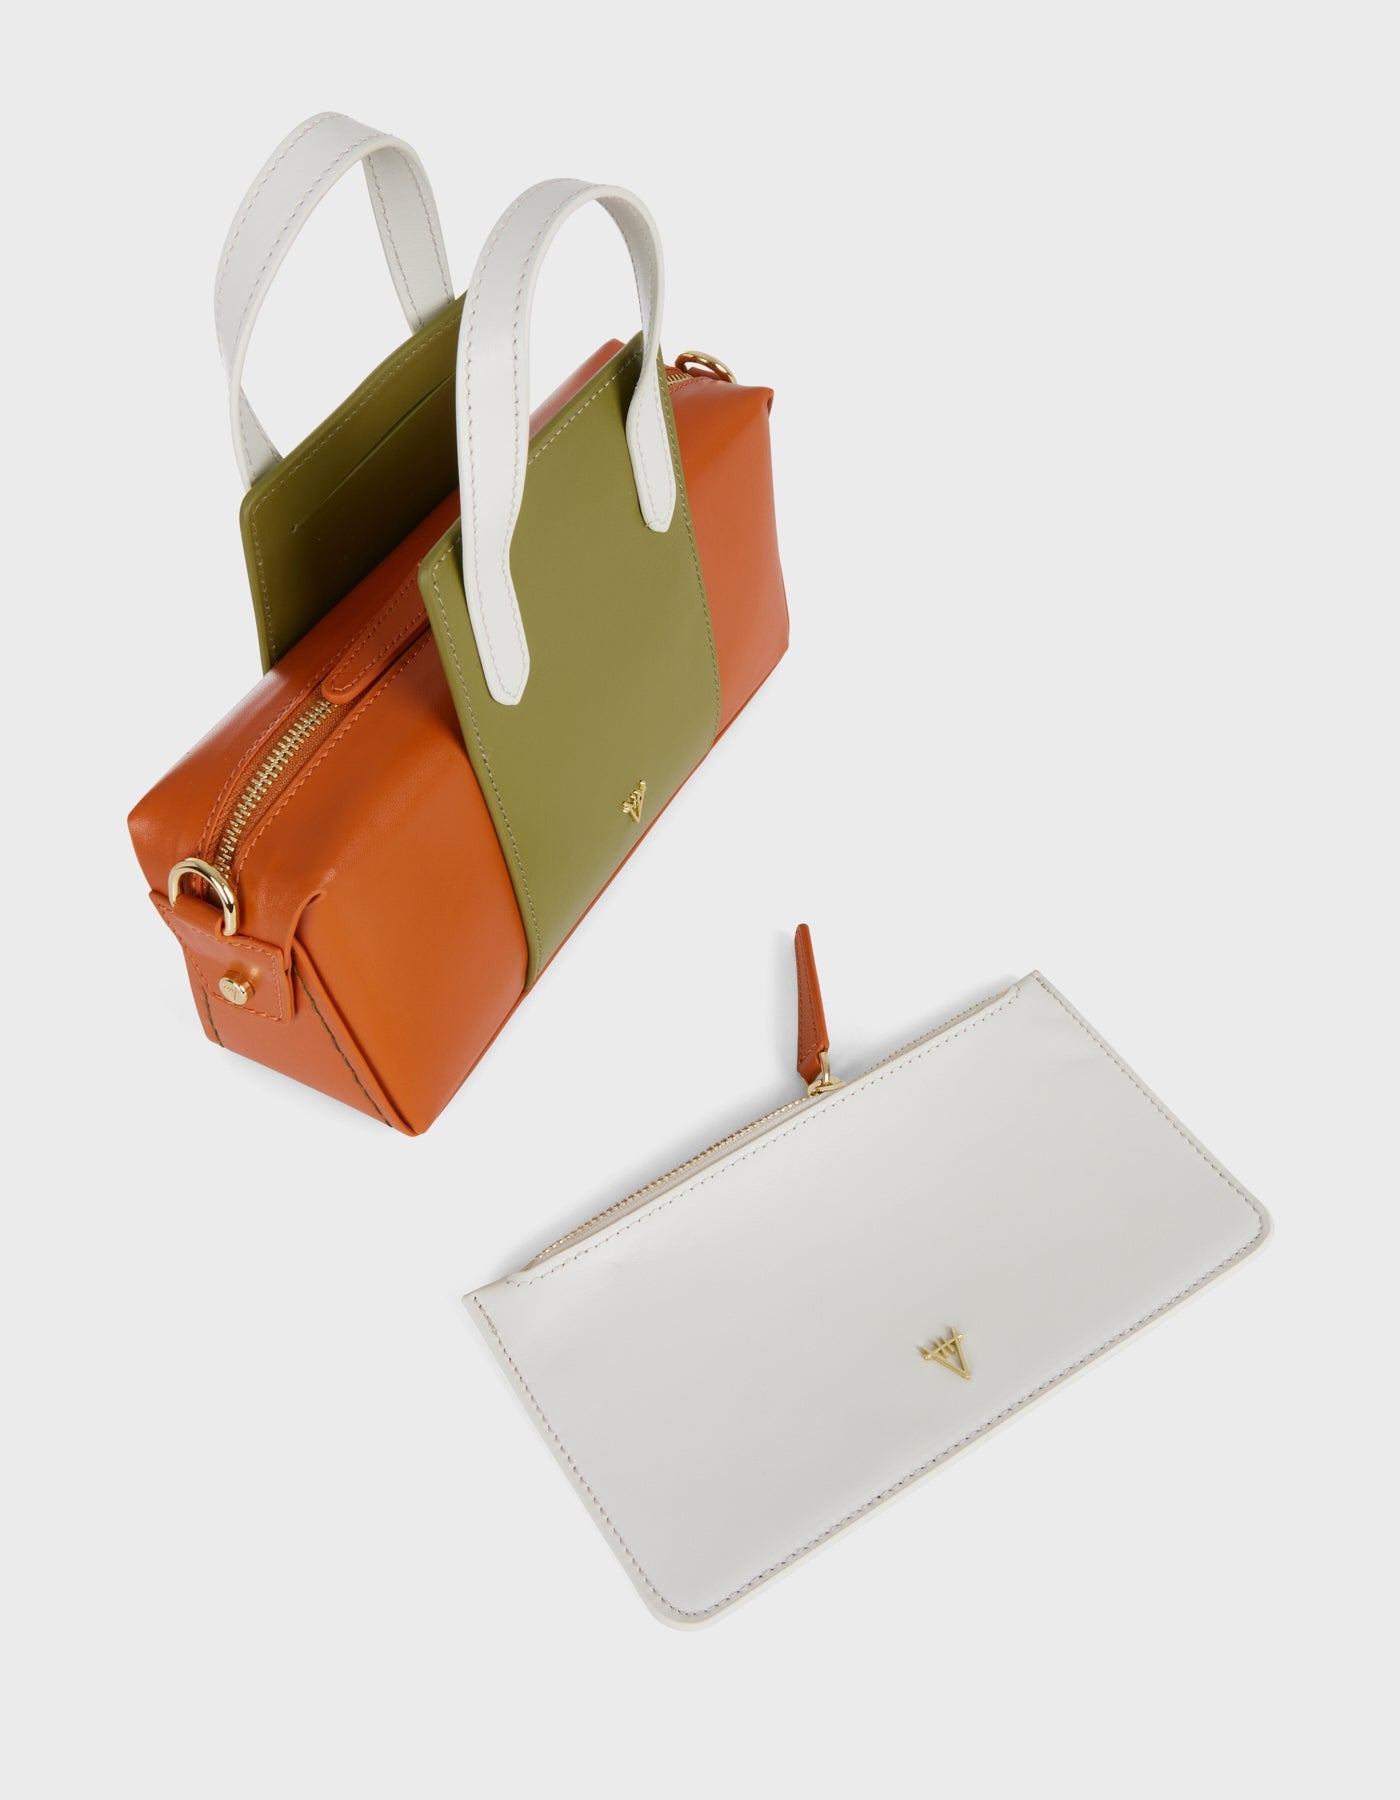 Hiva Atelier | Onsra Cylinder Shoulder Bag Burnt Orange & Olive & Bone | Beautiful and Versatile